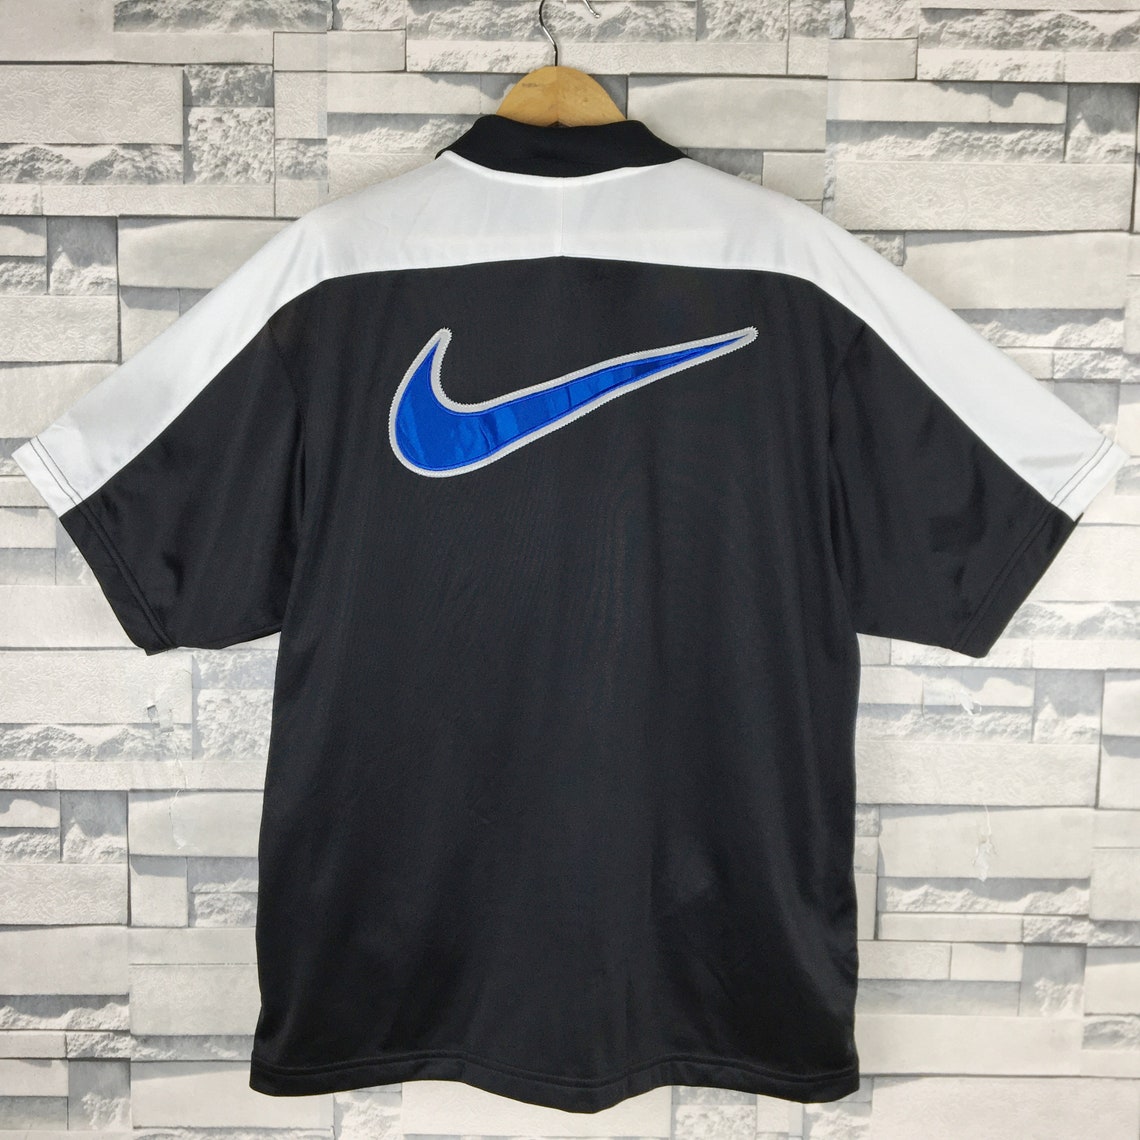 NIKE Basketball Sweater Short Sleeve Large Vintage 90s Nike | Etsy